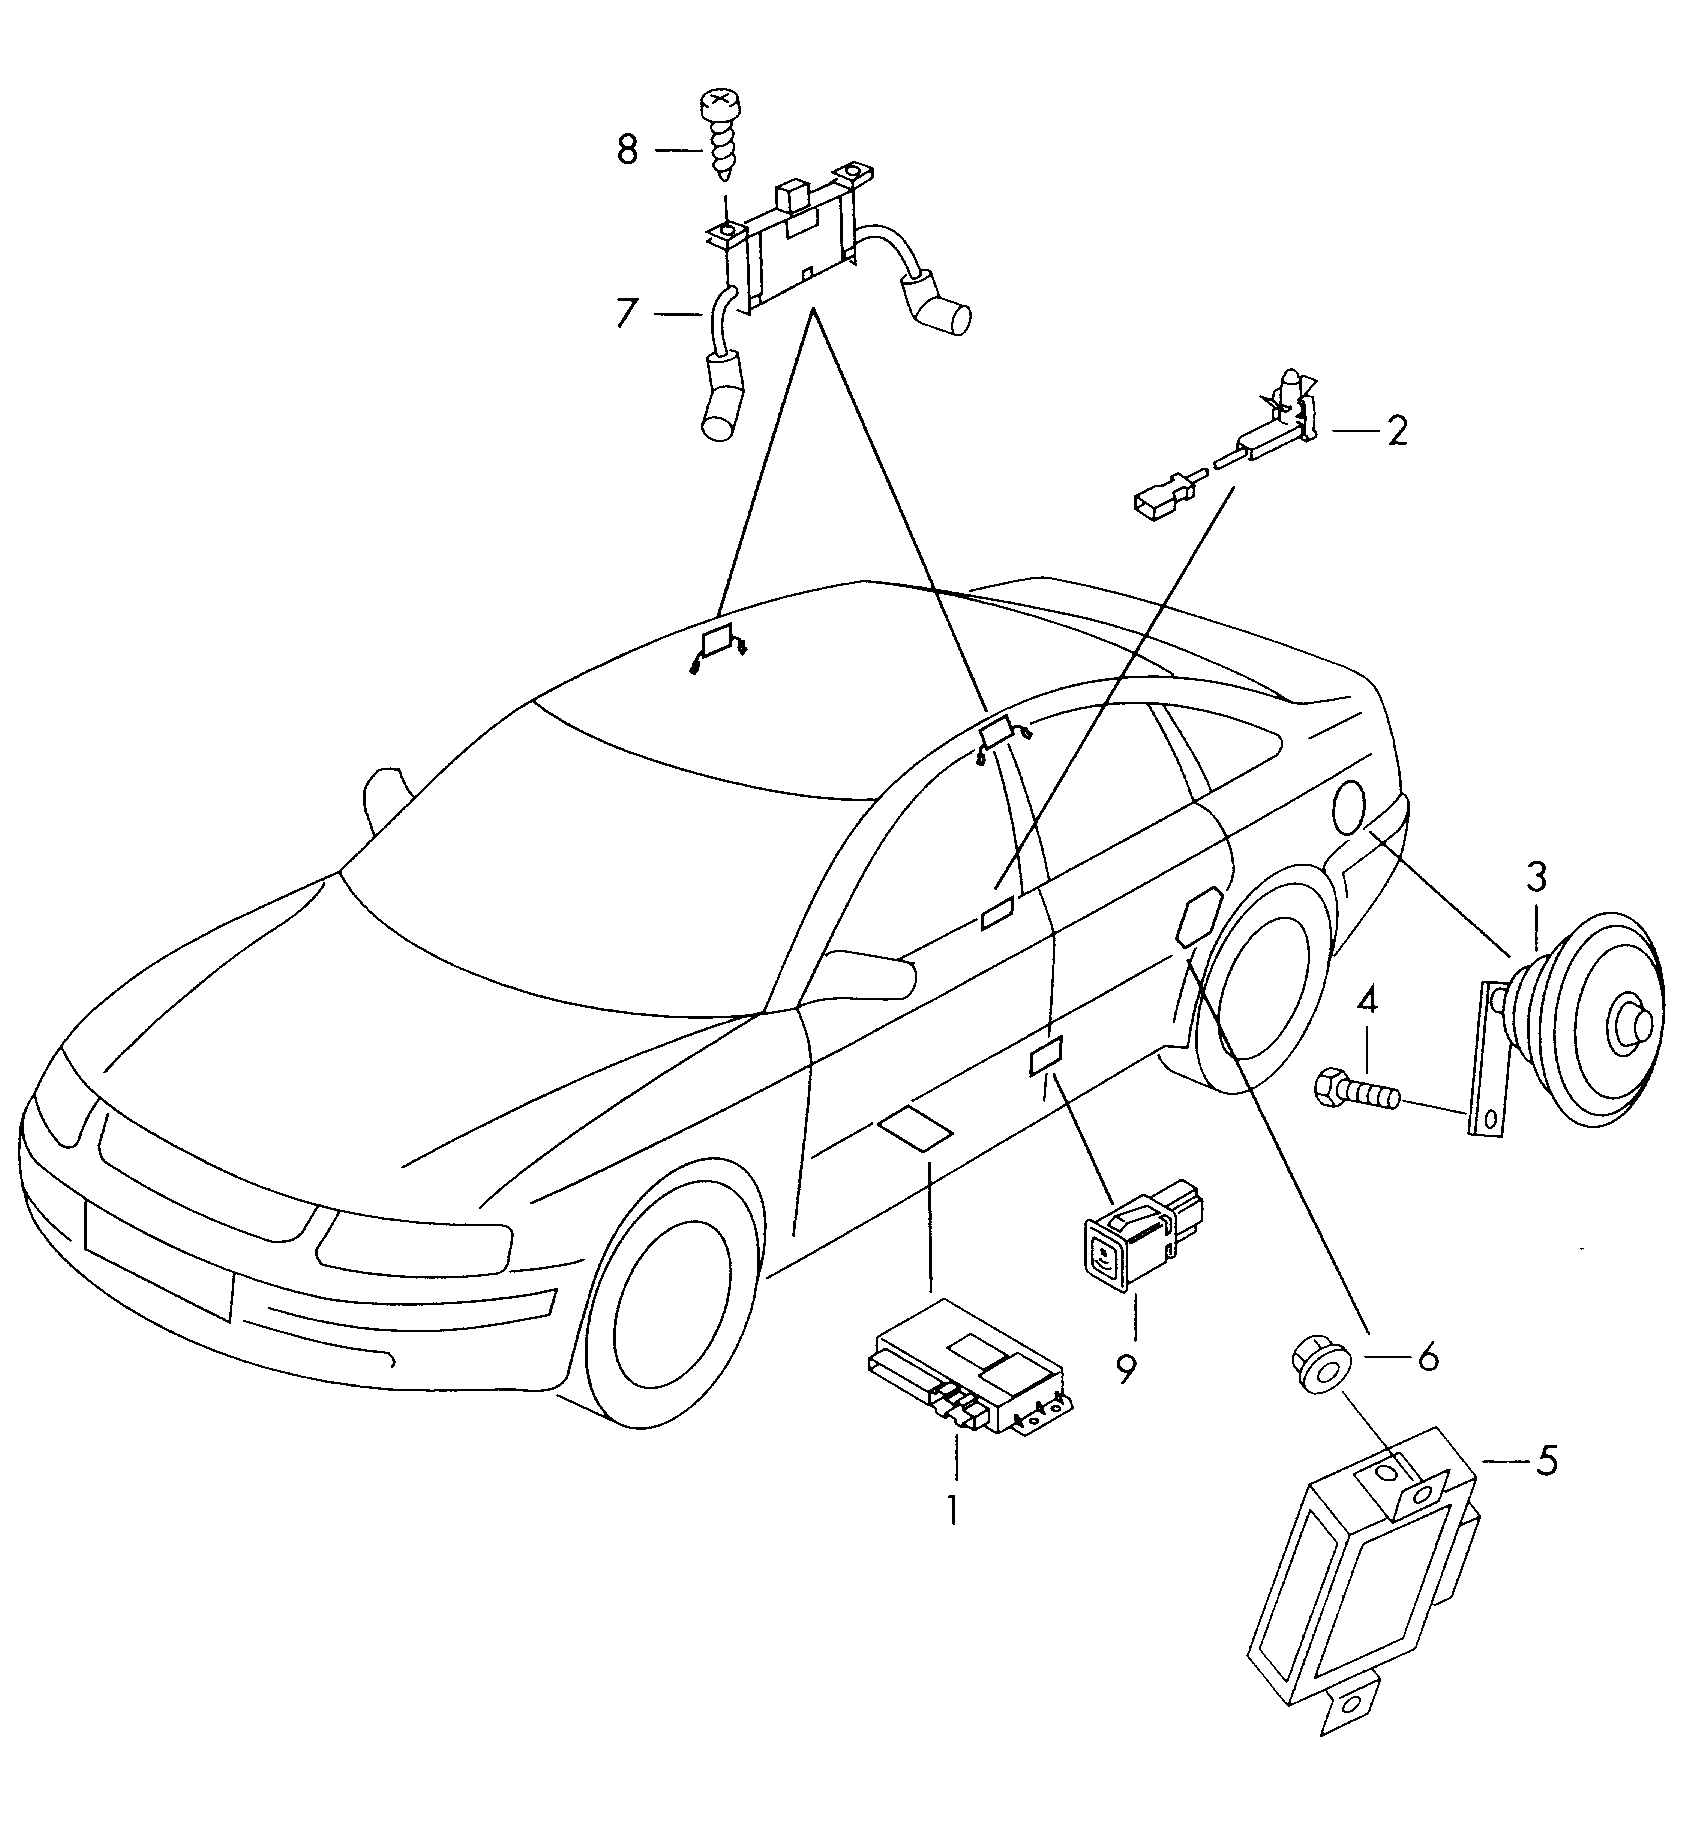 Hırsızlık uyarı sistemiElektrikli kapak kilid kuman-<br>dası için basma tuşu  - Audi A6/Avant - a6